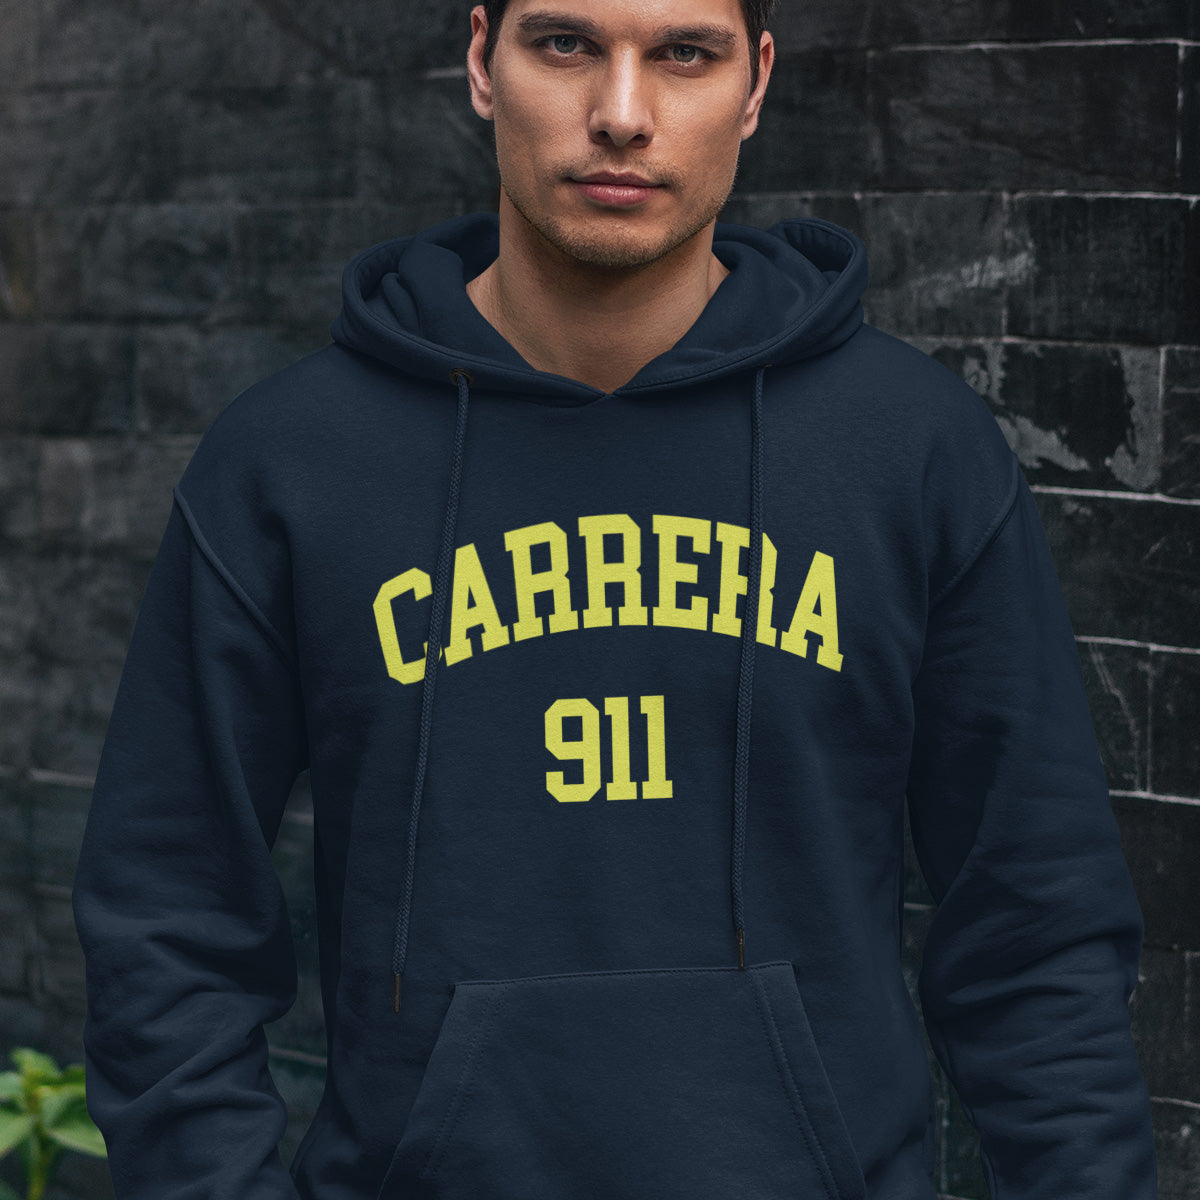 Carrera 911 Hoodie